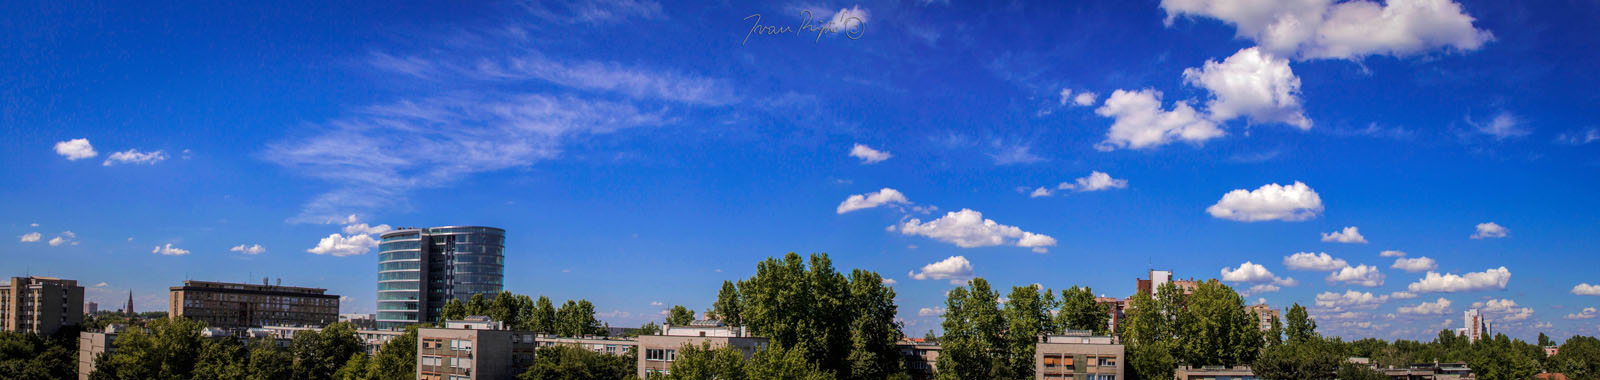 Panorama grada

Foto: Ivan Ripi

Kljune rijei: panorama grada